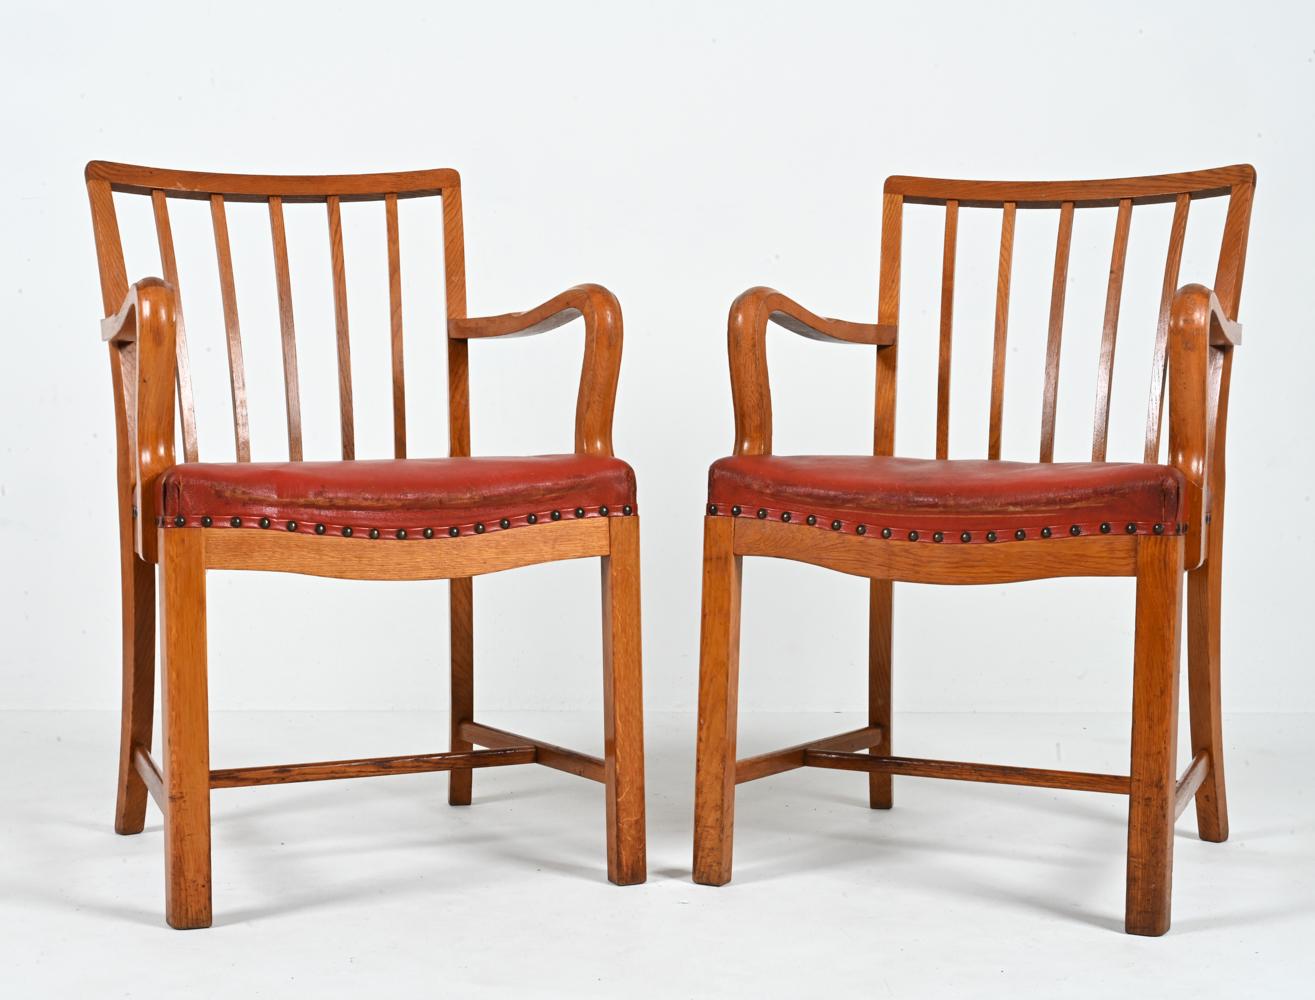 Ein außergewöhnlicher Fund für den anspruchsvollen Sammler - ein seltenes Paar dänischer Sessel aus der Mitte des Jahrhunderts, die Steen Eiler Rasmussen zugeschrieben werden. Diese Stühle stammen aus den 1940er bis 1950er Jahren und verkörpern mit